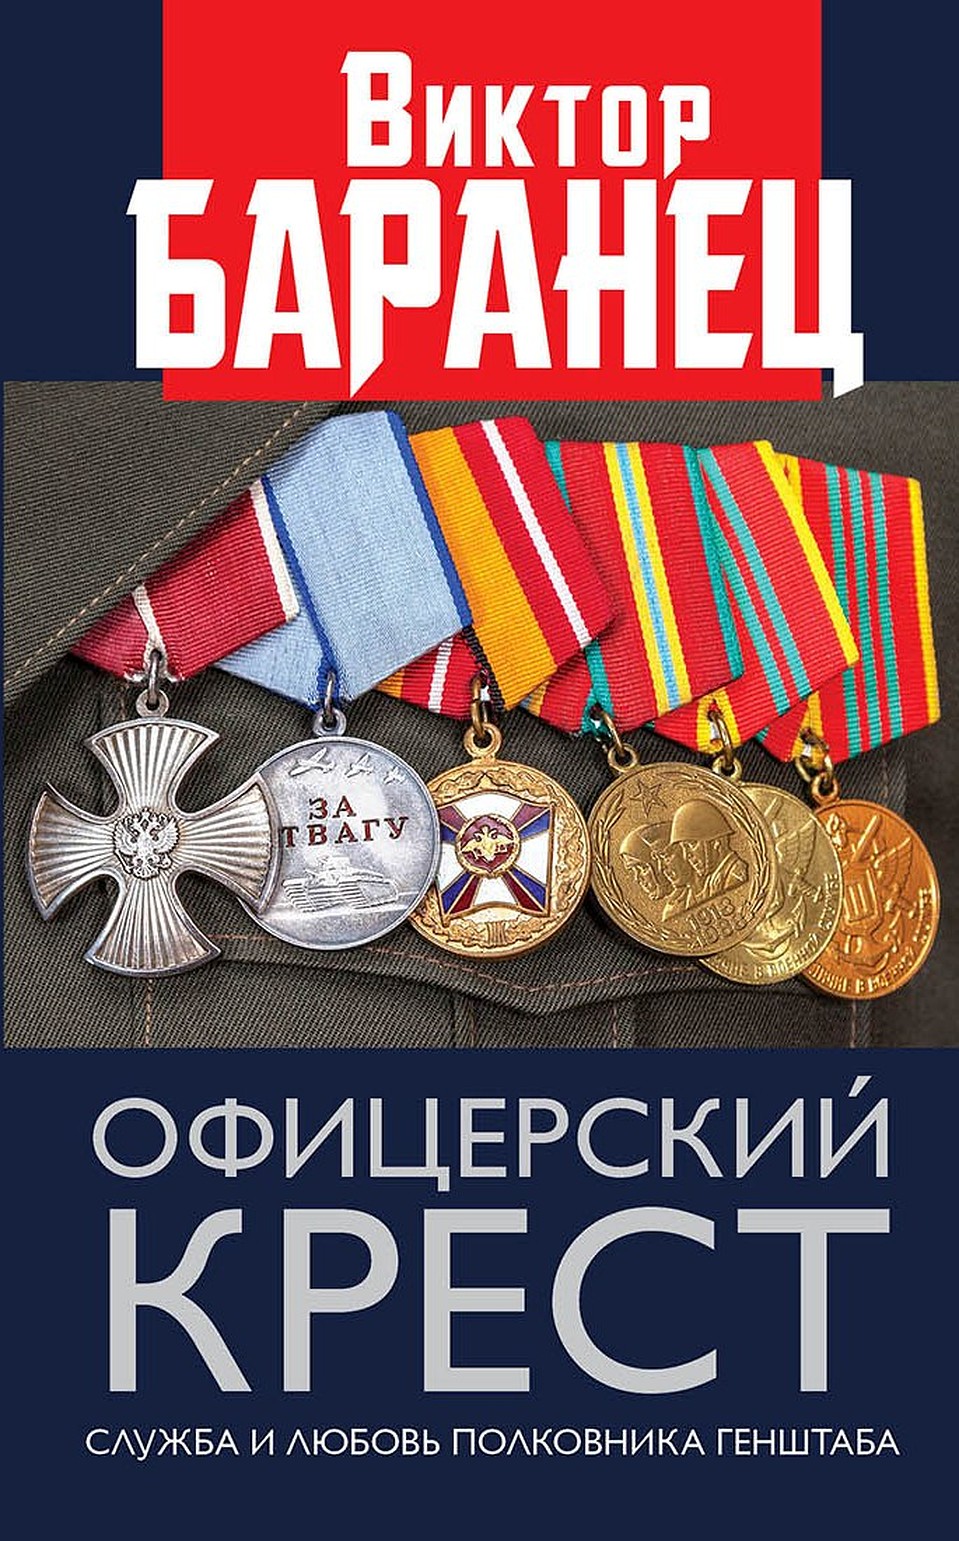 Книга Виктора Баранца "Офицерский крест" 